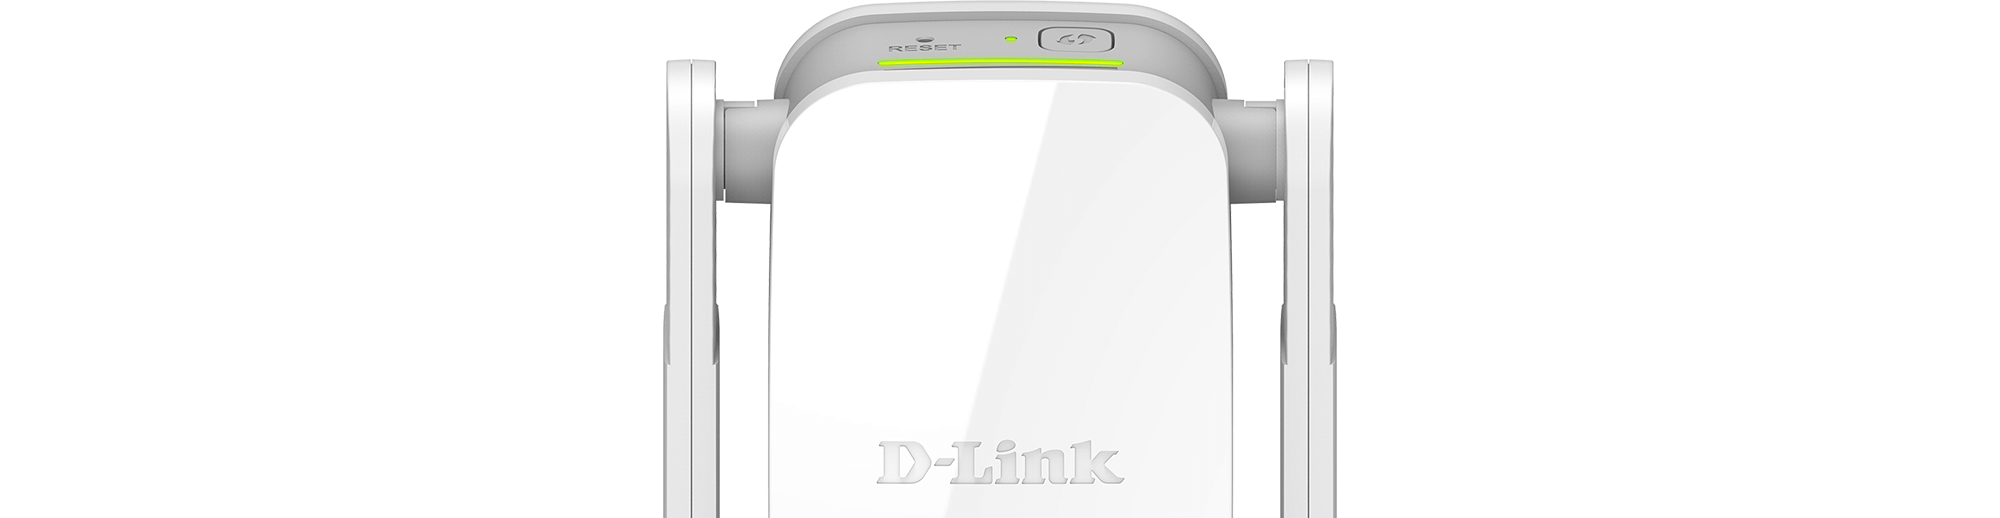 Répéteur Wi-Fi AC1200 DAP-1610 Dual Band D-Link - CAPMICRO